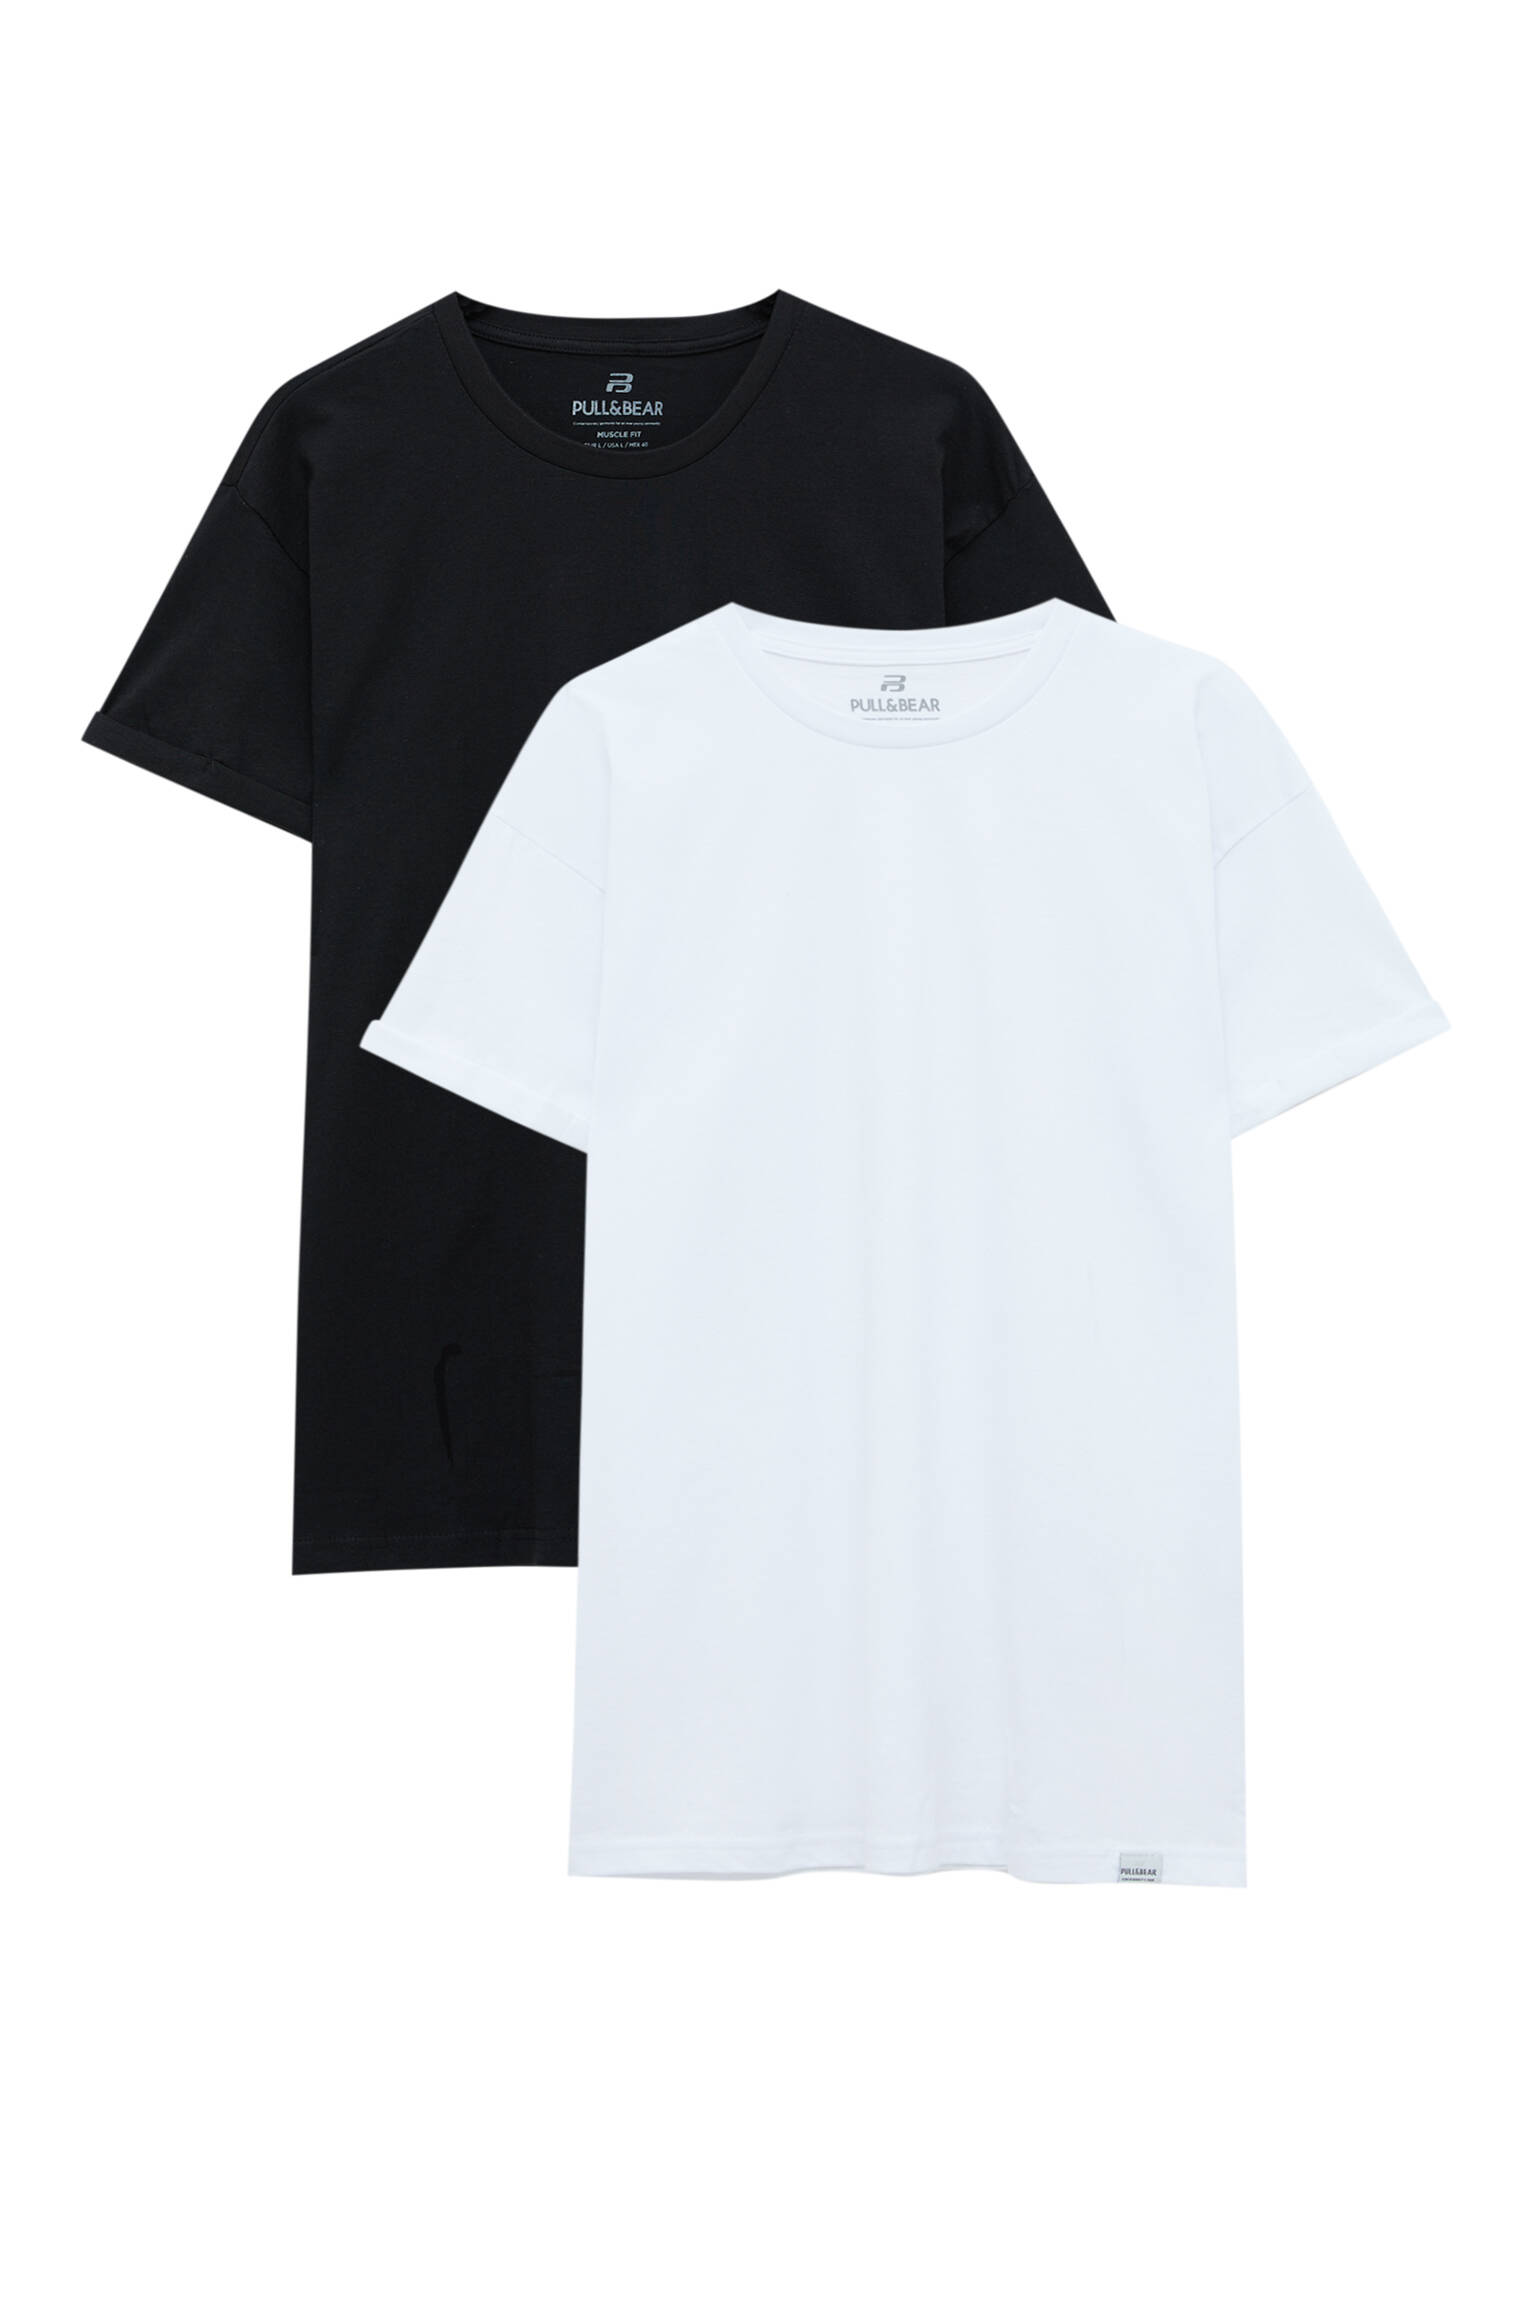 Pull&bear Homme Lot De Deux T-shirts Muscle Fit à Manches Courtes Et Col Rond, Confectionnés En Coton. Noir/blanc Xxs